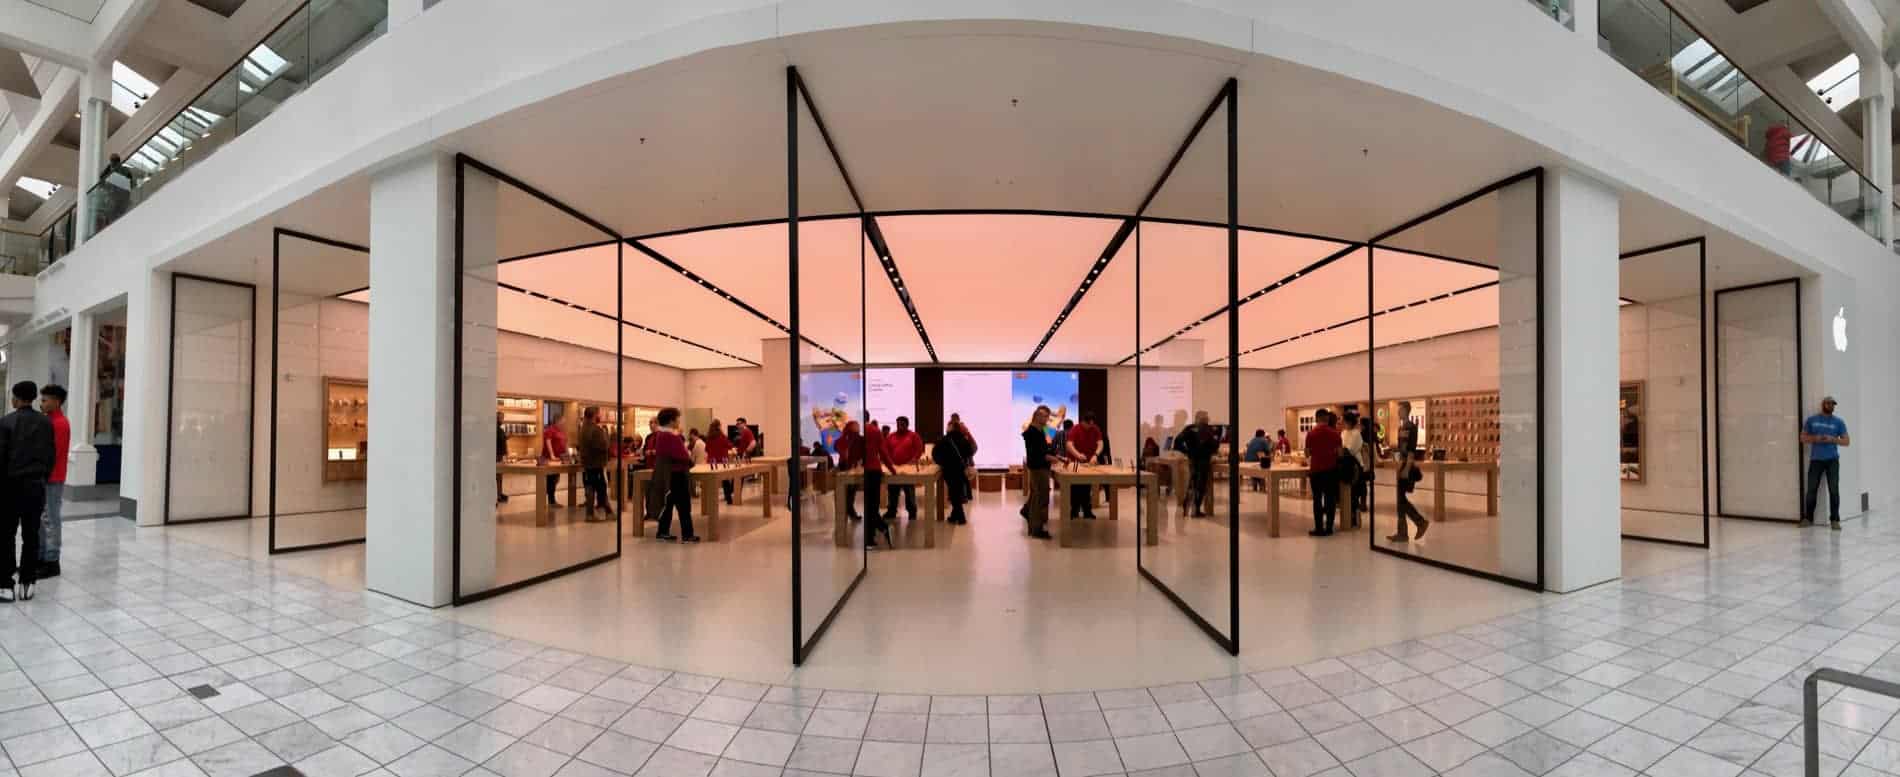 Frontalansicht von Apple in Nashville / Tennessee / USA